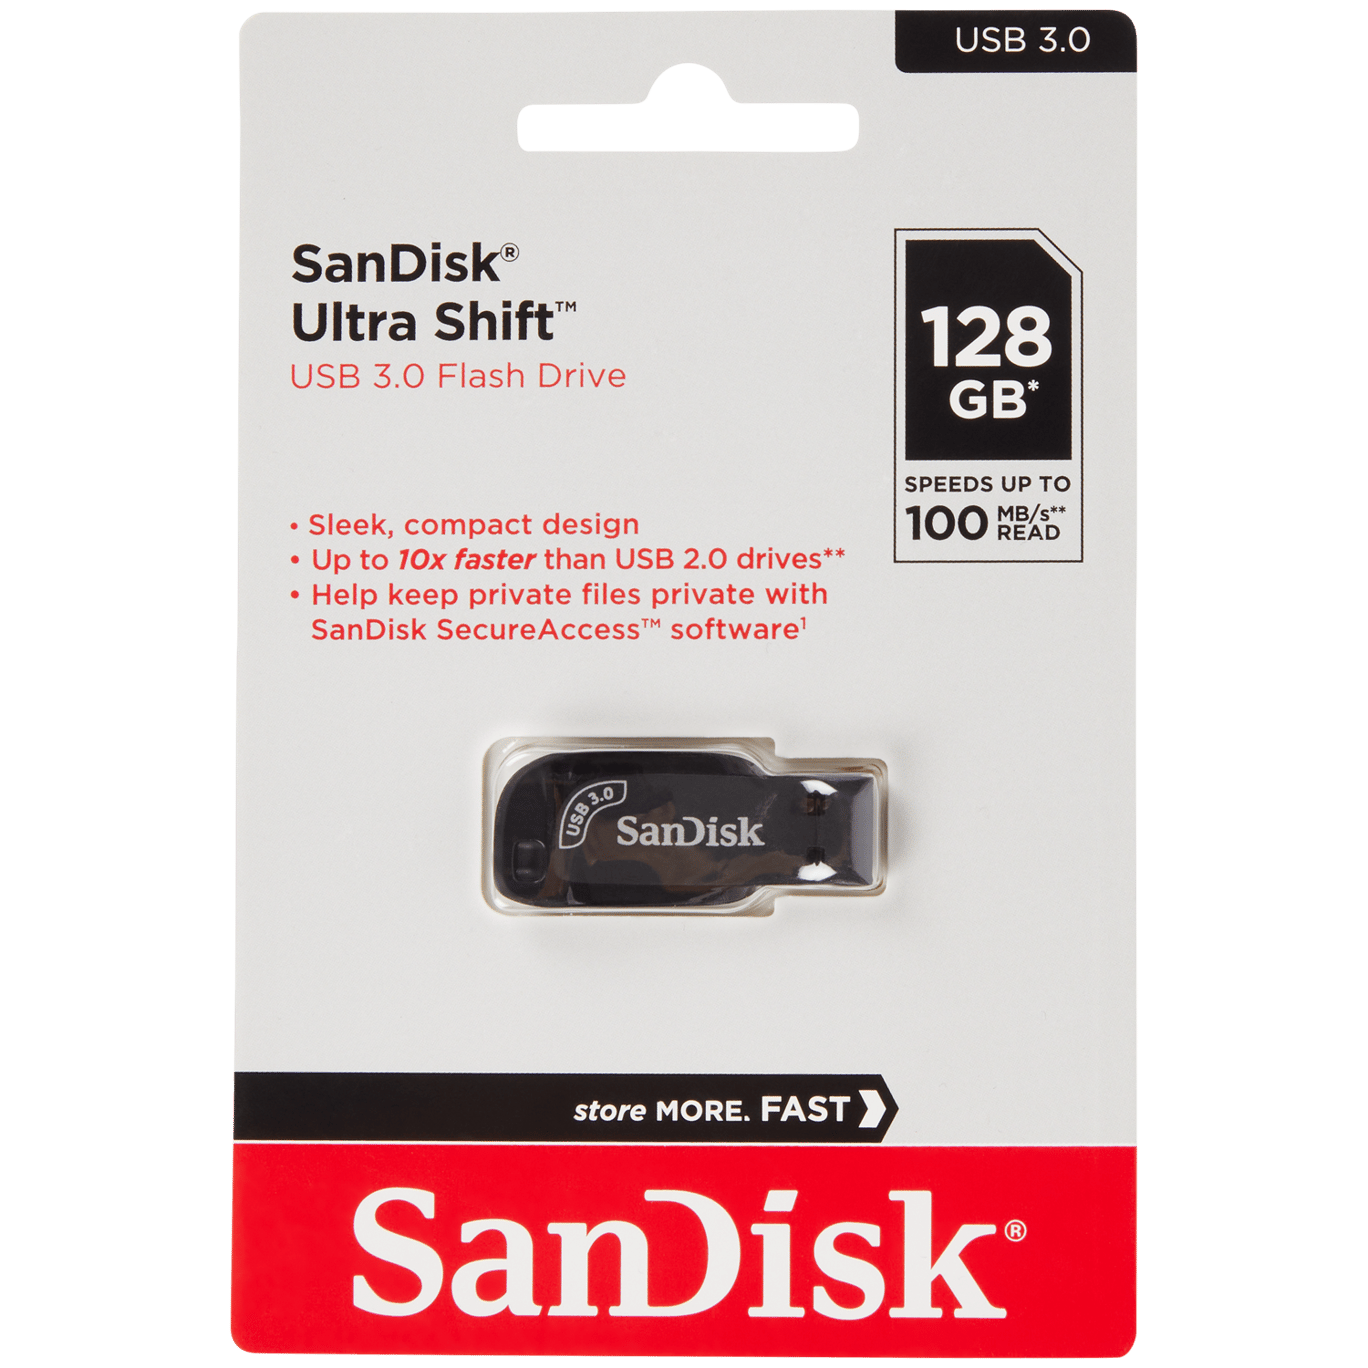 SANDISK - Carte mémoire - 64 Go Carte microSD Extreme Idéal pour les  Caméras d'Action & Drone